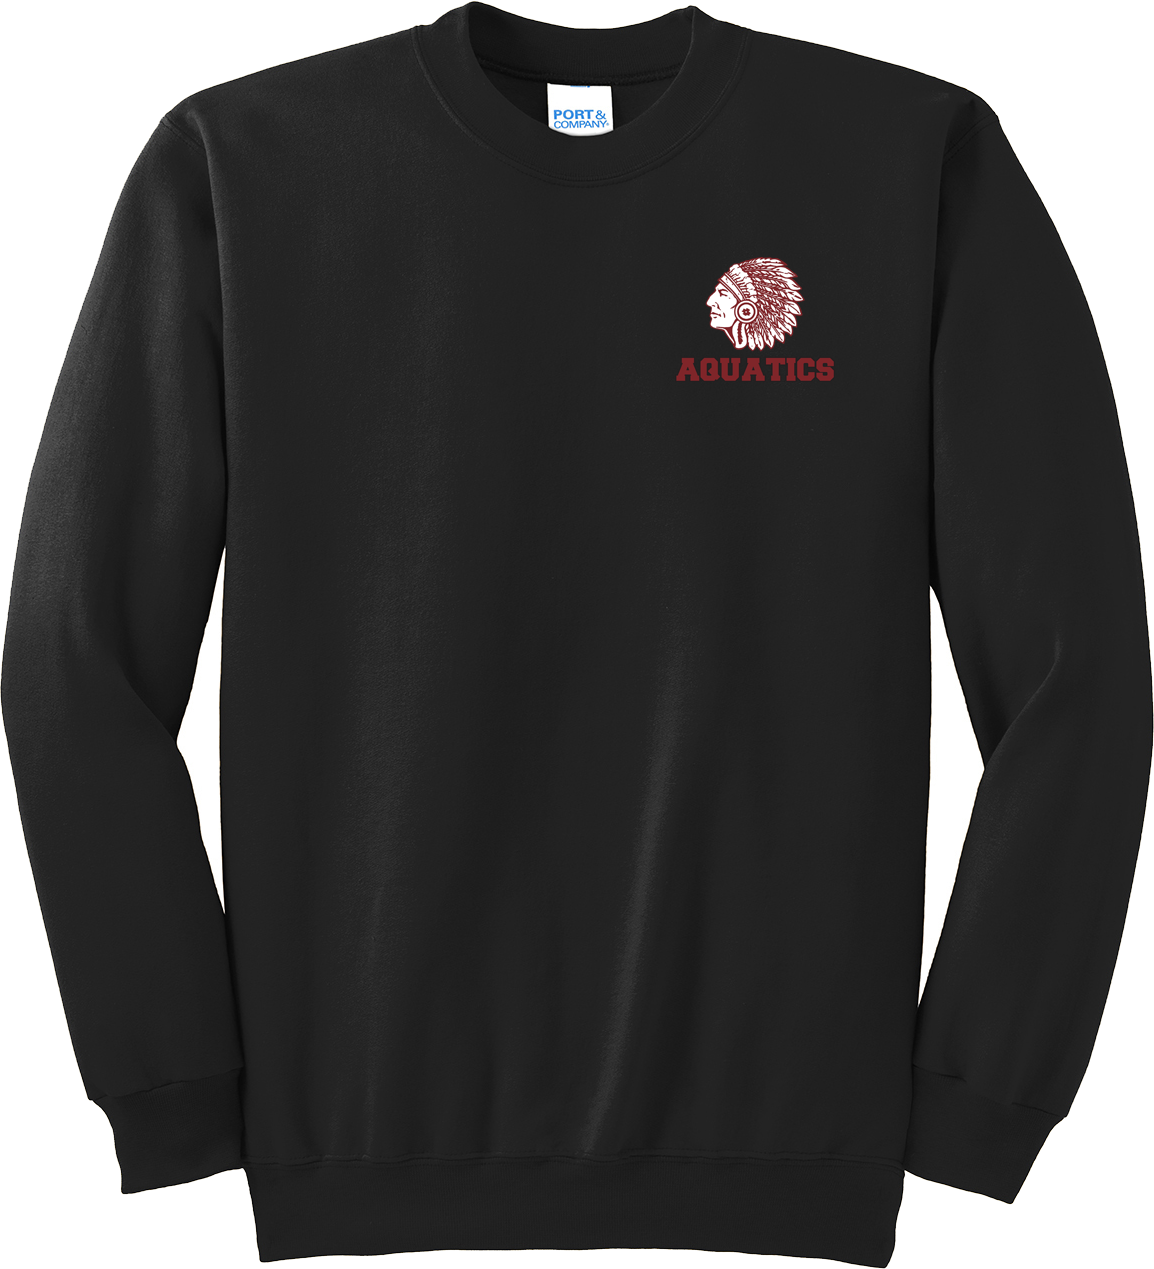 Farmington Aquatics Black Crew Neck Sweater